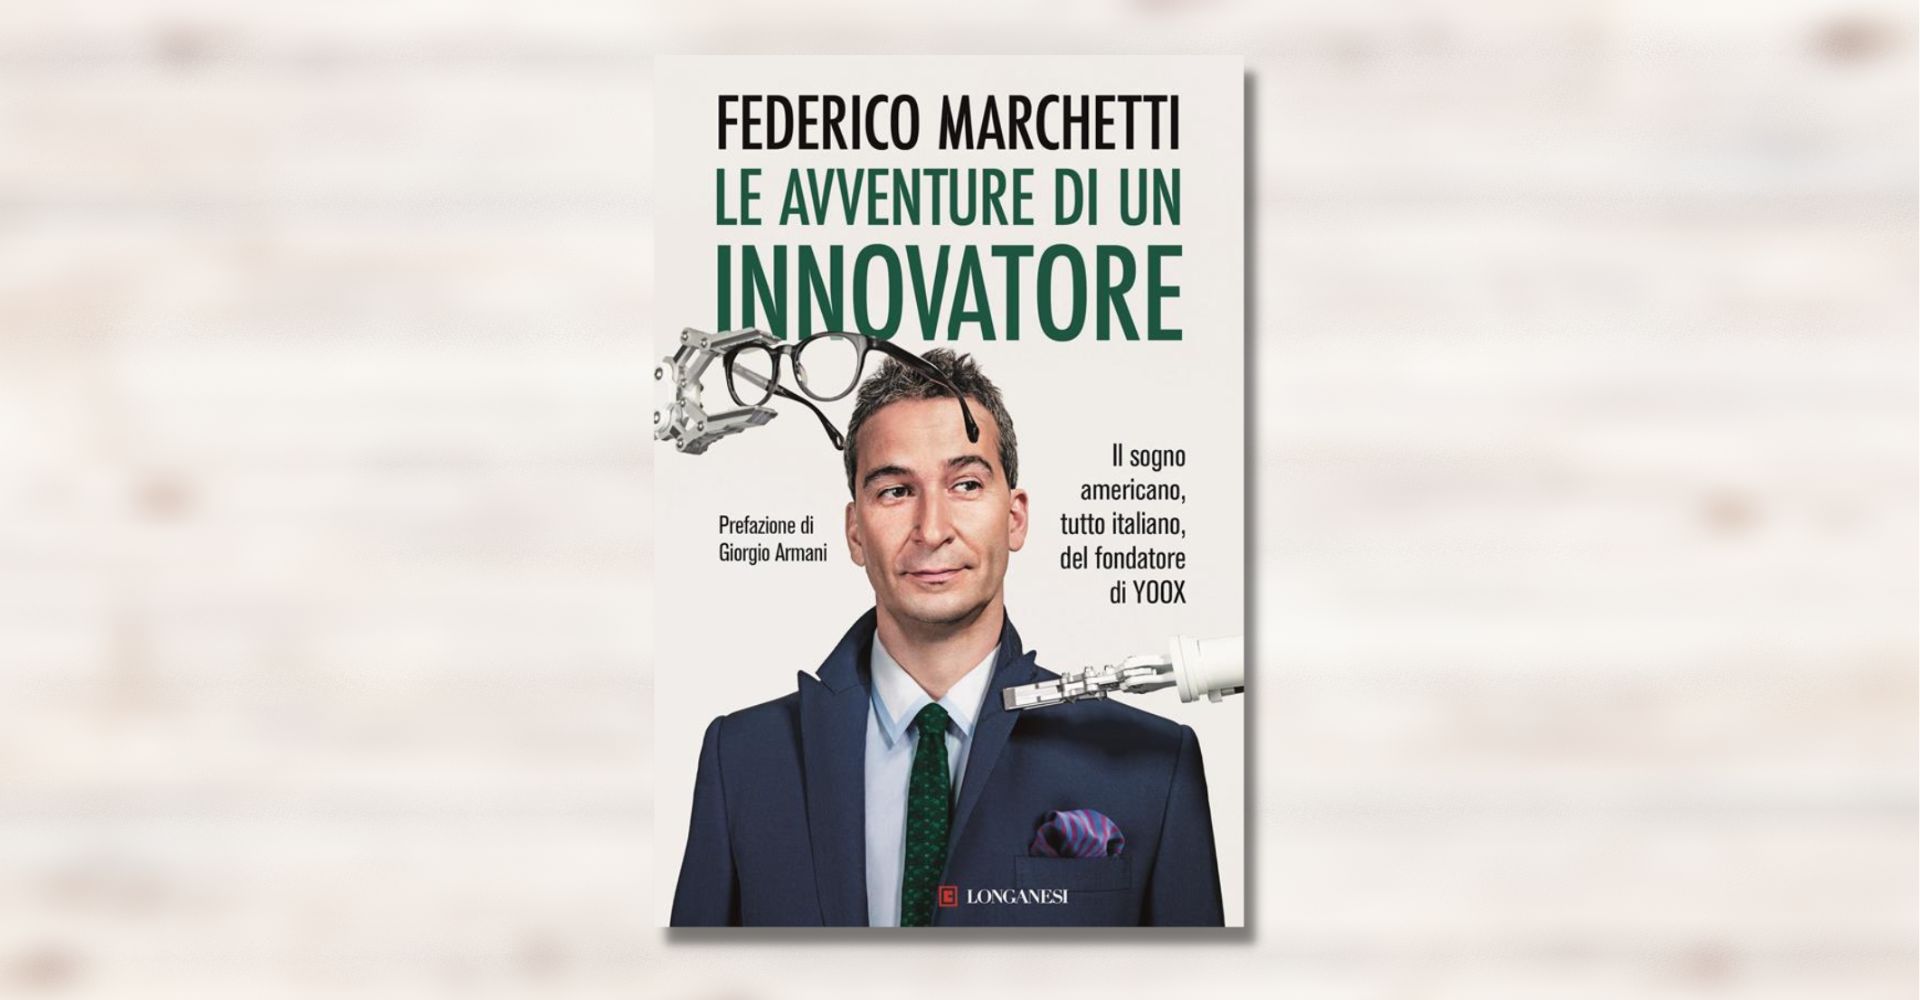 Chi non rischia perde in partenza: il libro (ricco di consigli) dell'innovatore Federico Marchetti